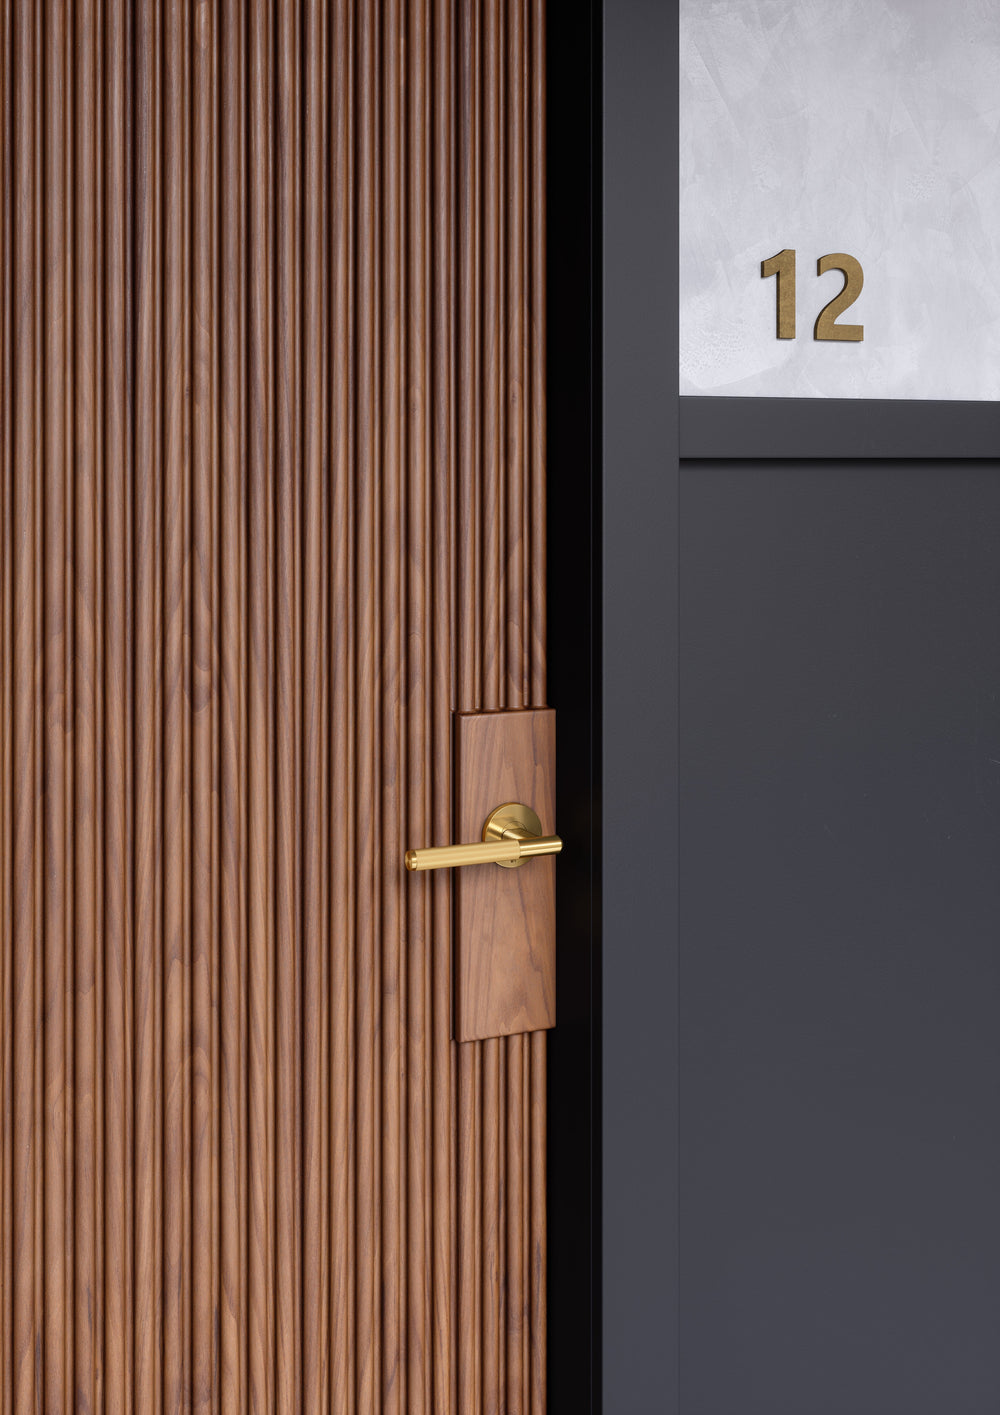 Dörrhandtag i mässing i en rå och exklusiv look med linjerat mönster. Här visas dörrhandtaget monterat på en trädörr.